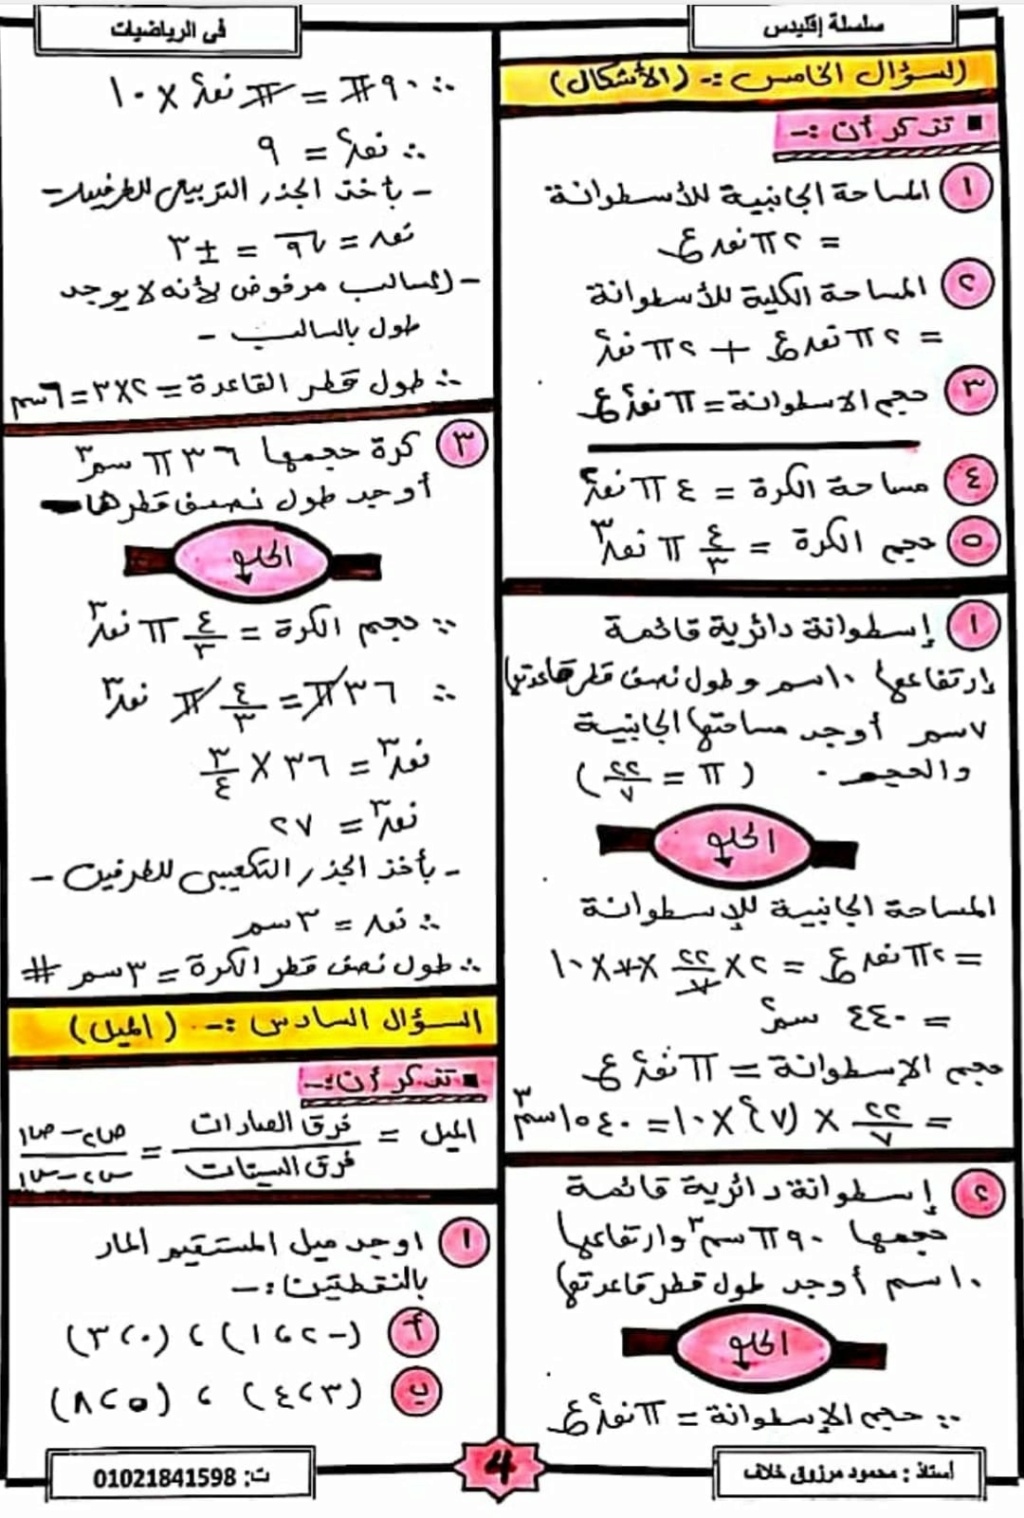 مراجعة الجبر للصف الثاني الاعدادى ترم اول أ. محمود مرزوق 3157